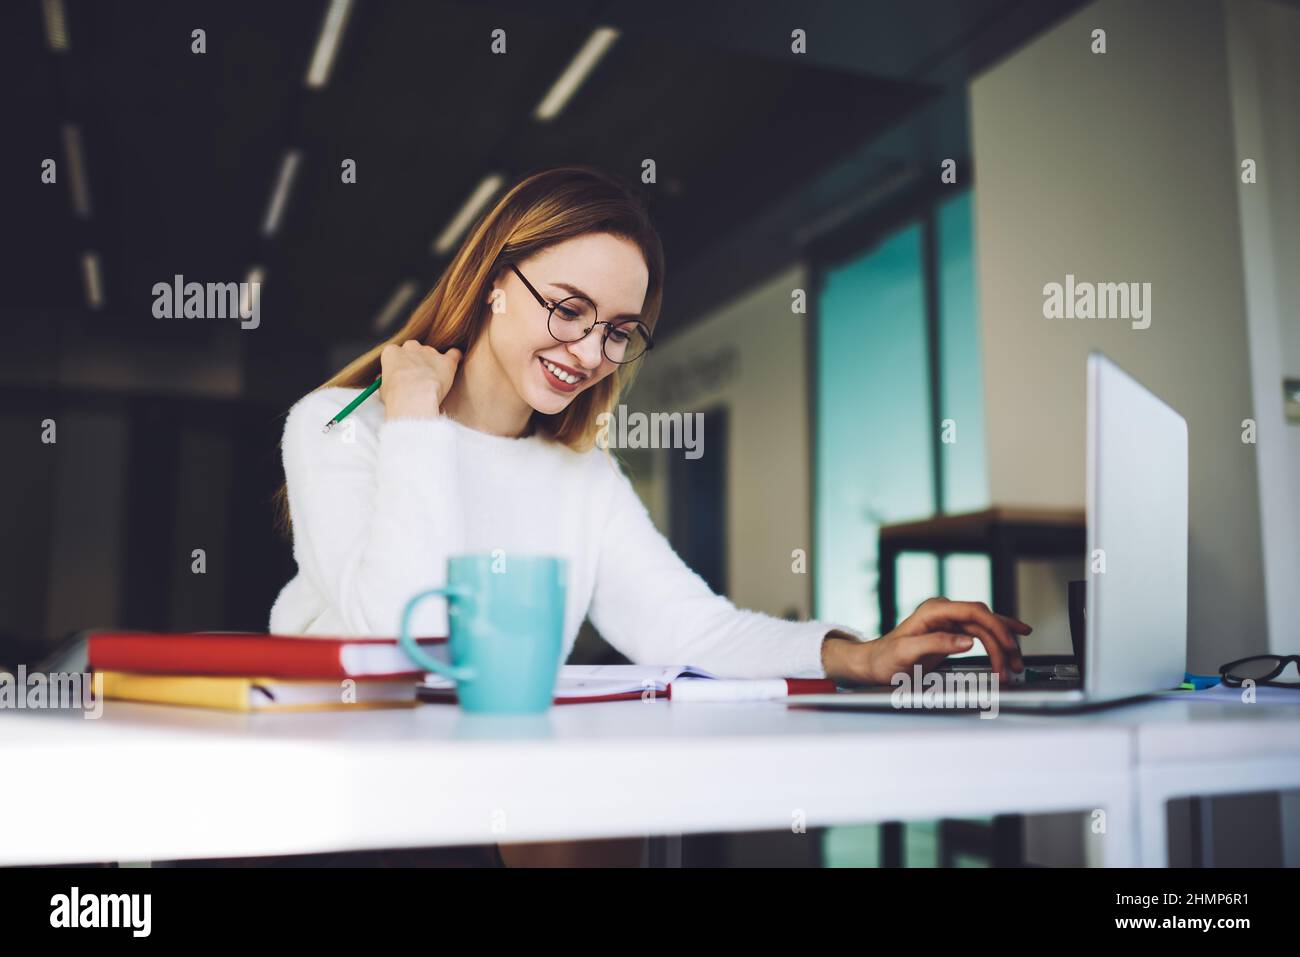 Une jeune femme heureuse qui tape sur un ordinateur portable au bureau Banque D'Images